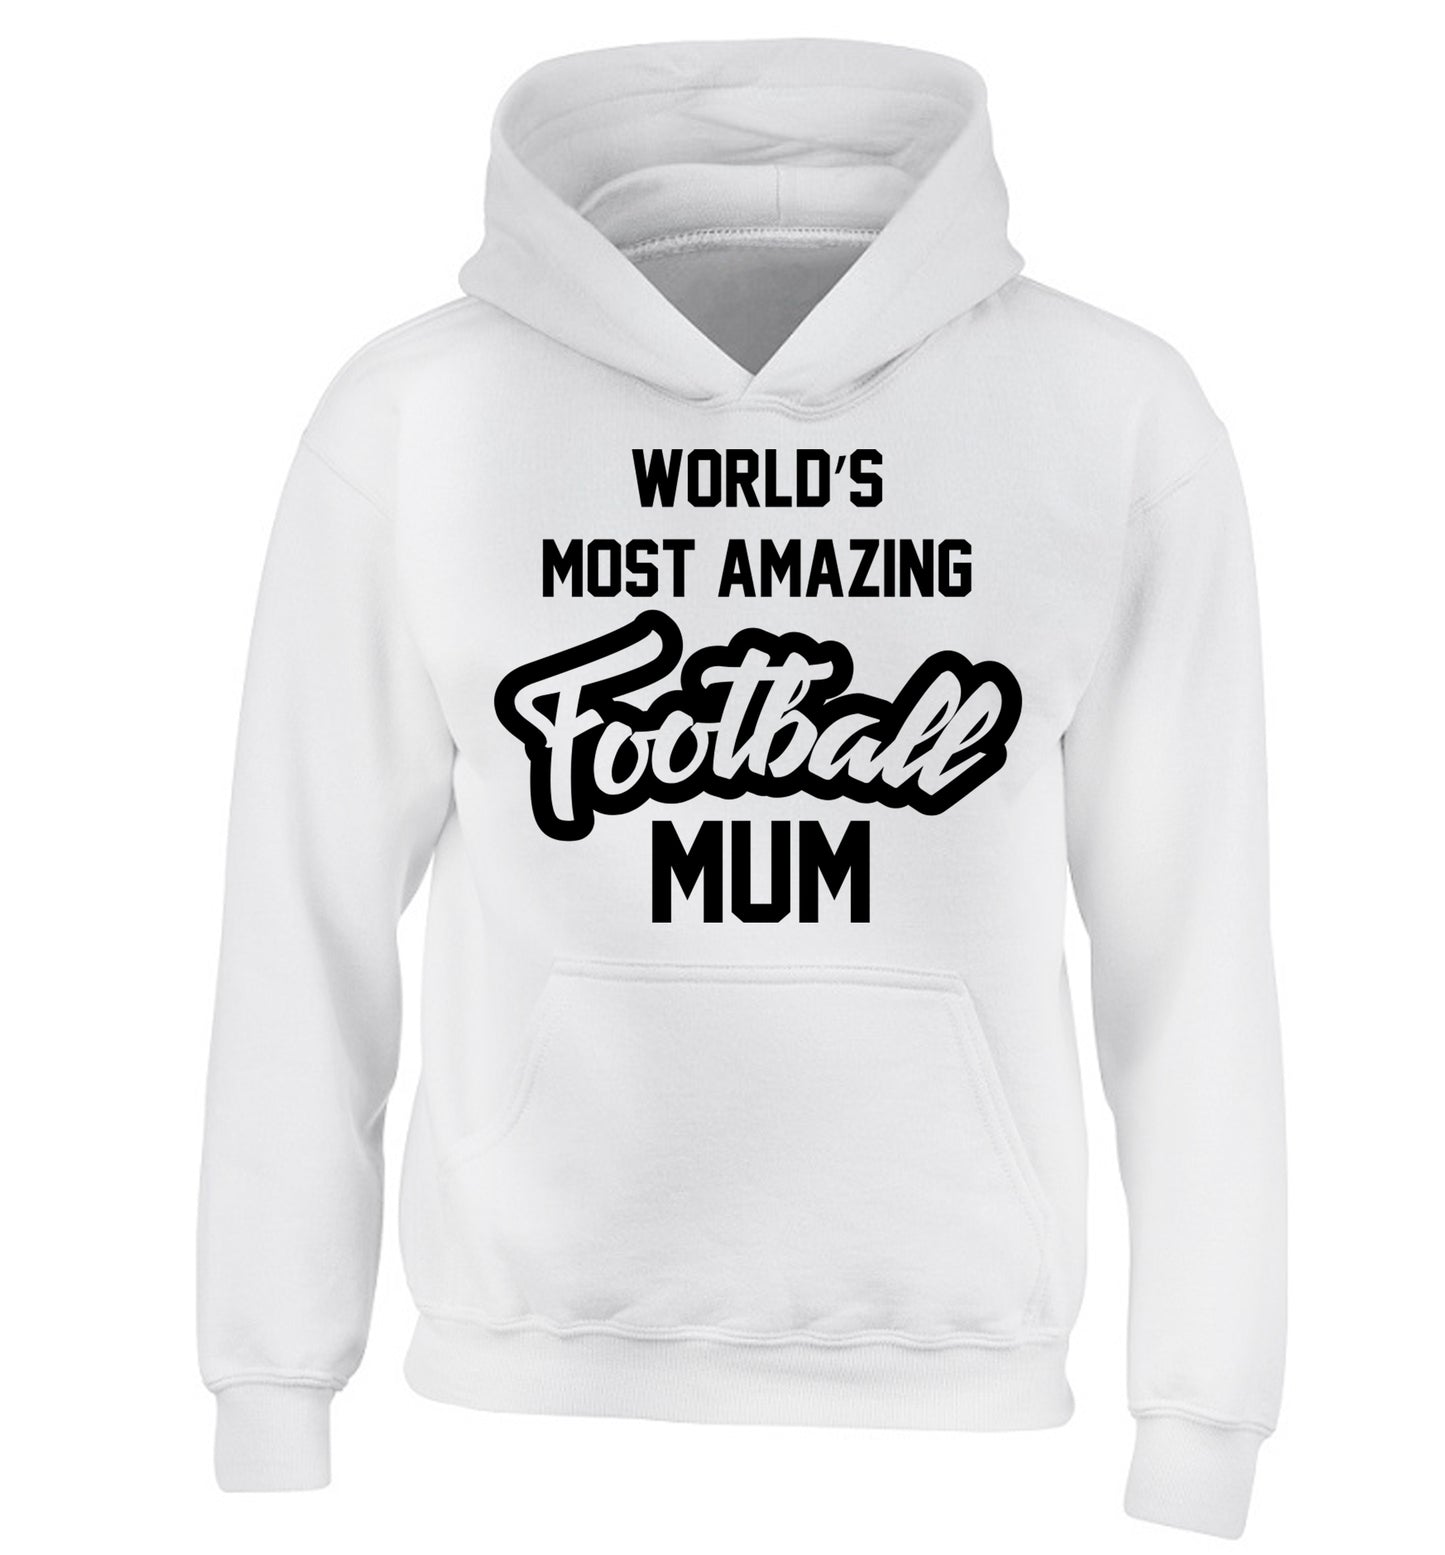 Worlds most amazing football mum children's white hoodie 12-14 Years